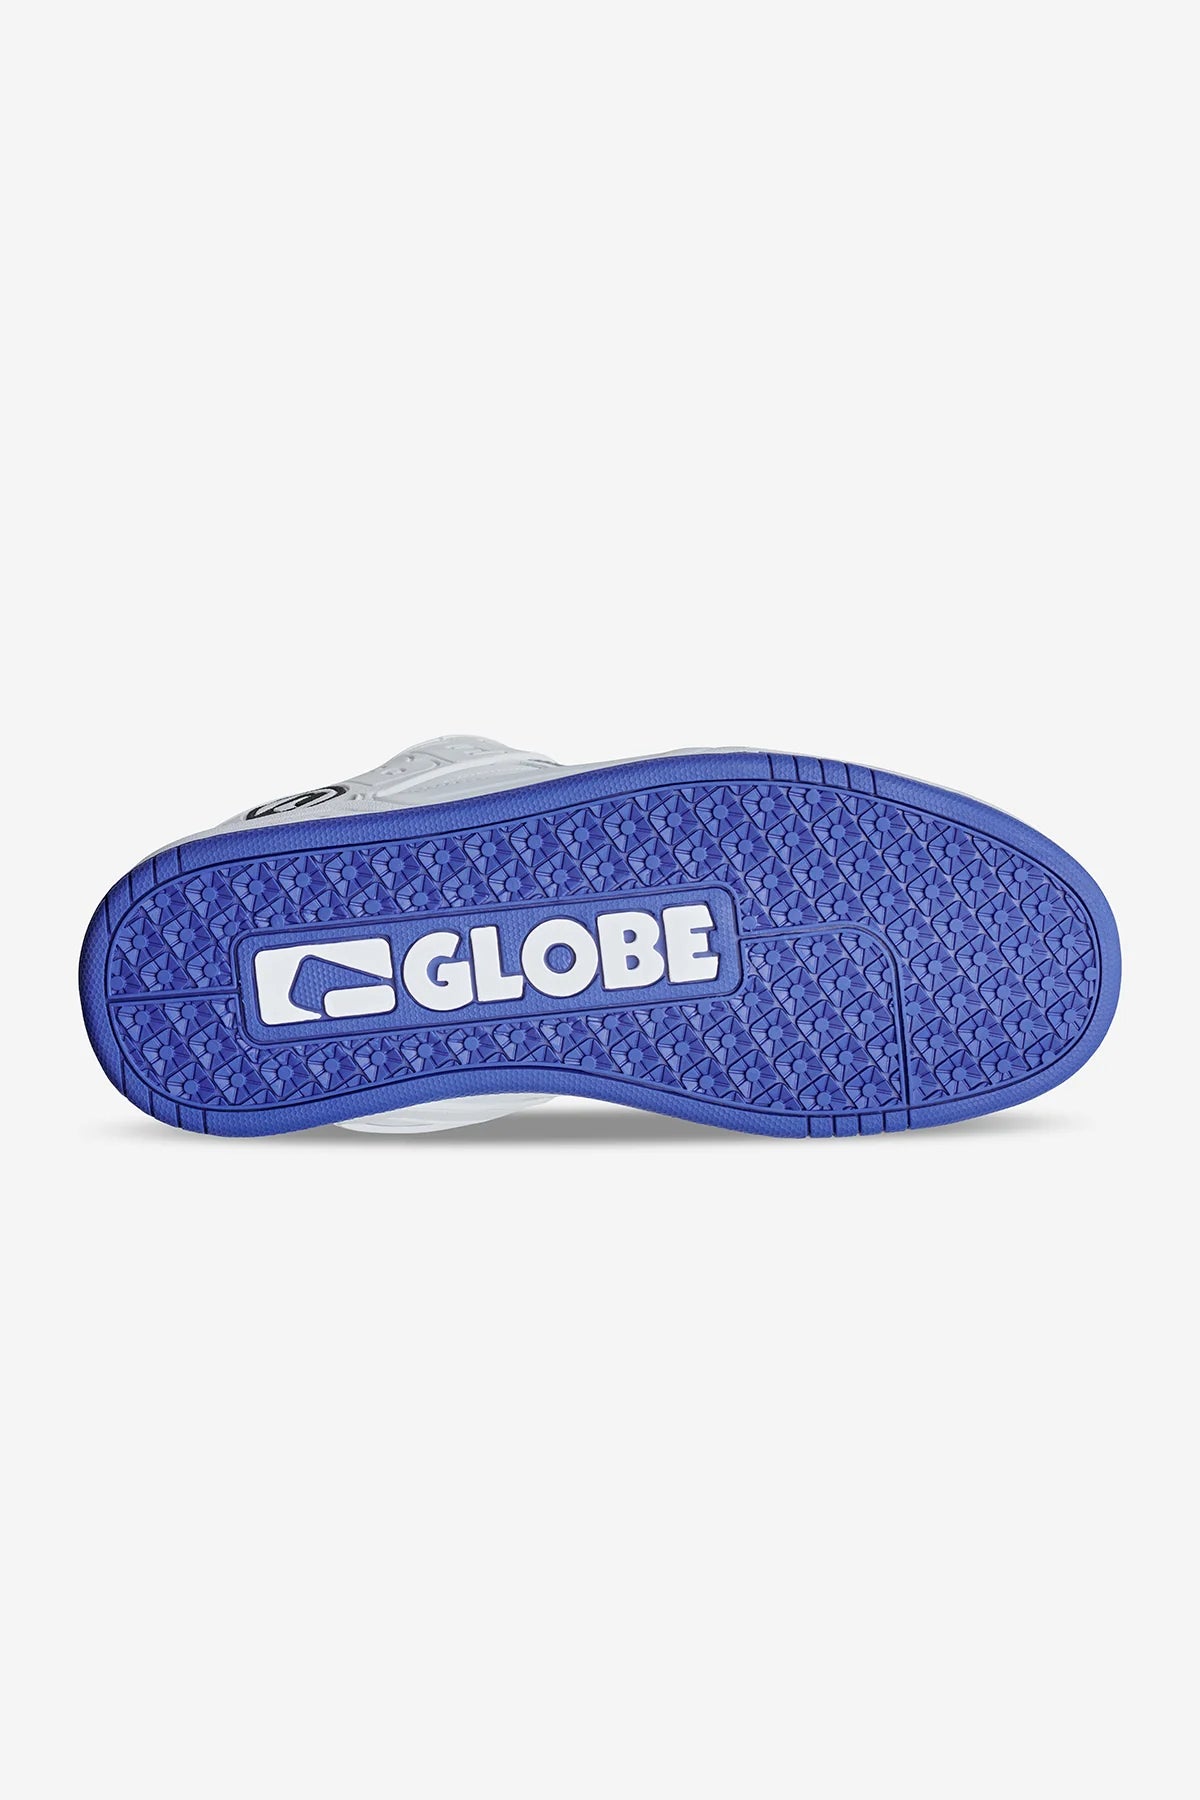 GLOBE Tilt Mens Low Shoe - White/Cobalt